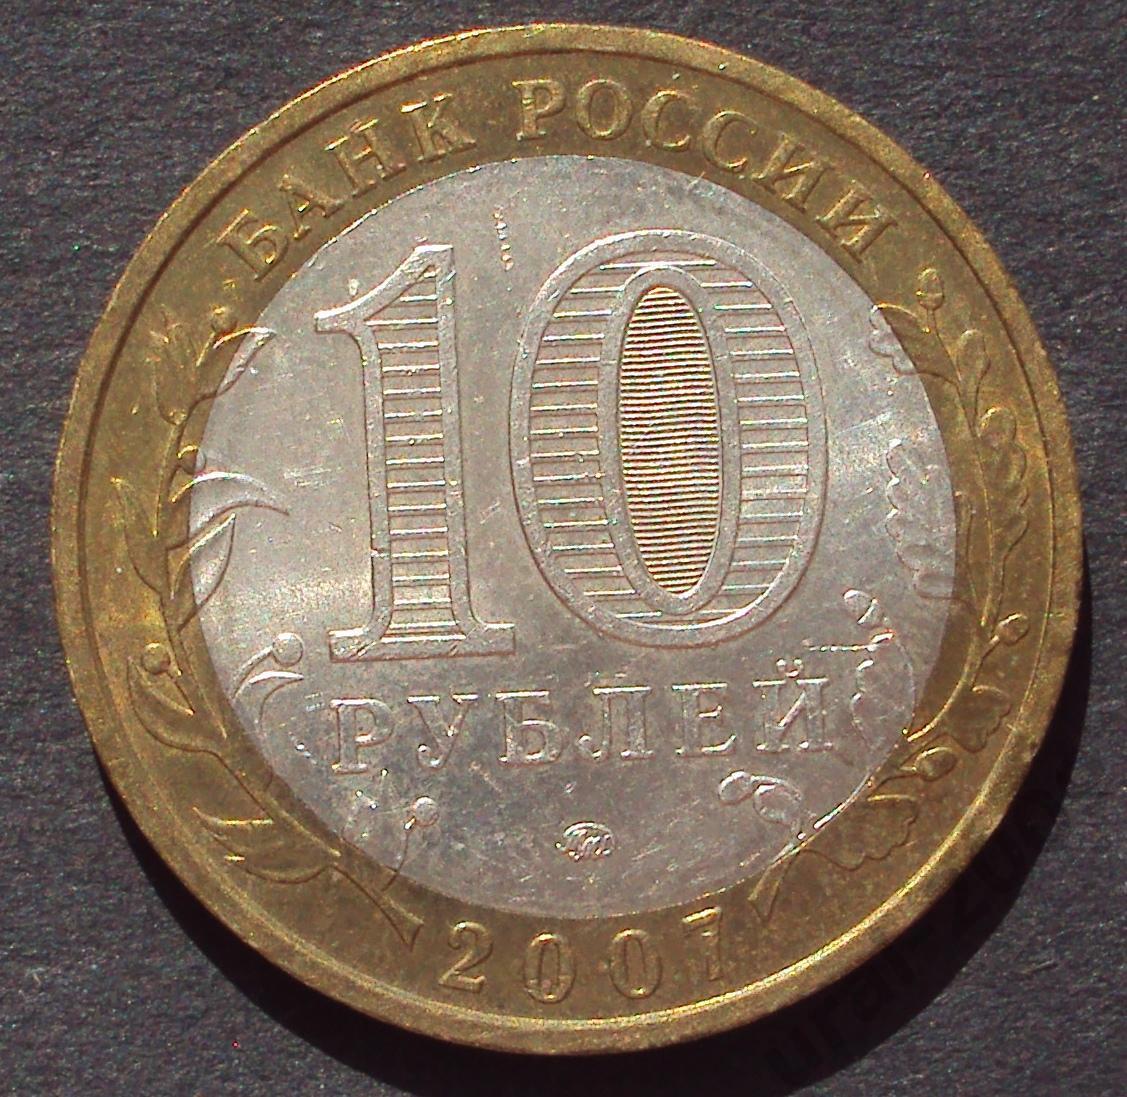 10 рублей 2007 год! Липецкая область. ММД. (А-31).